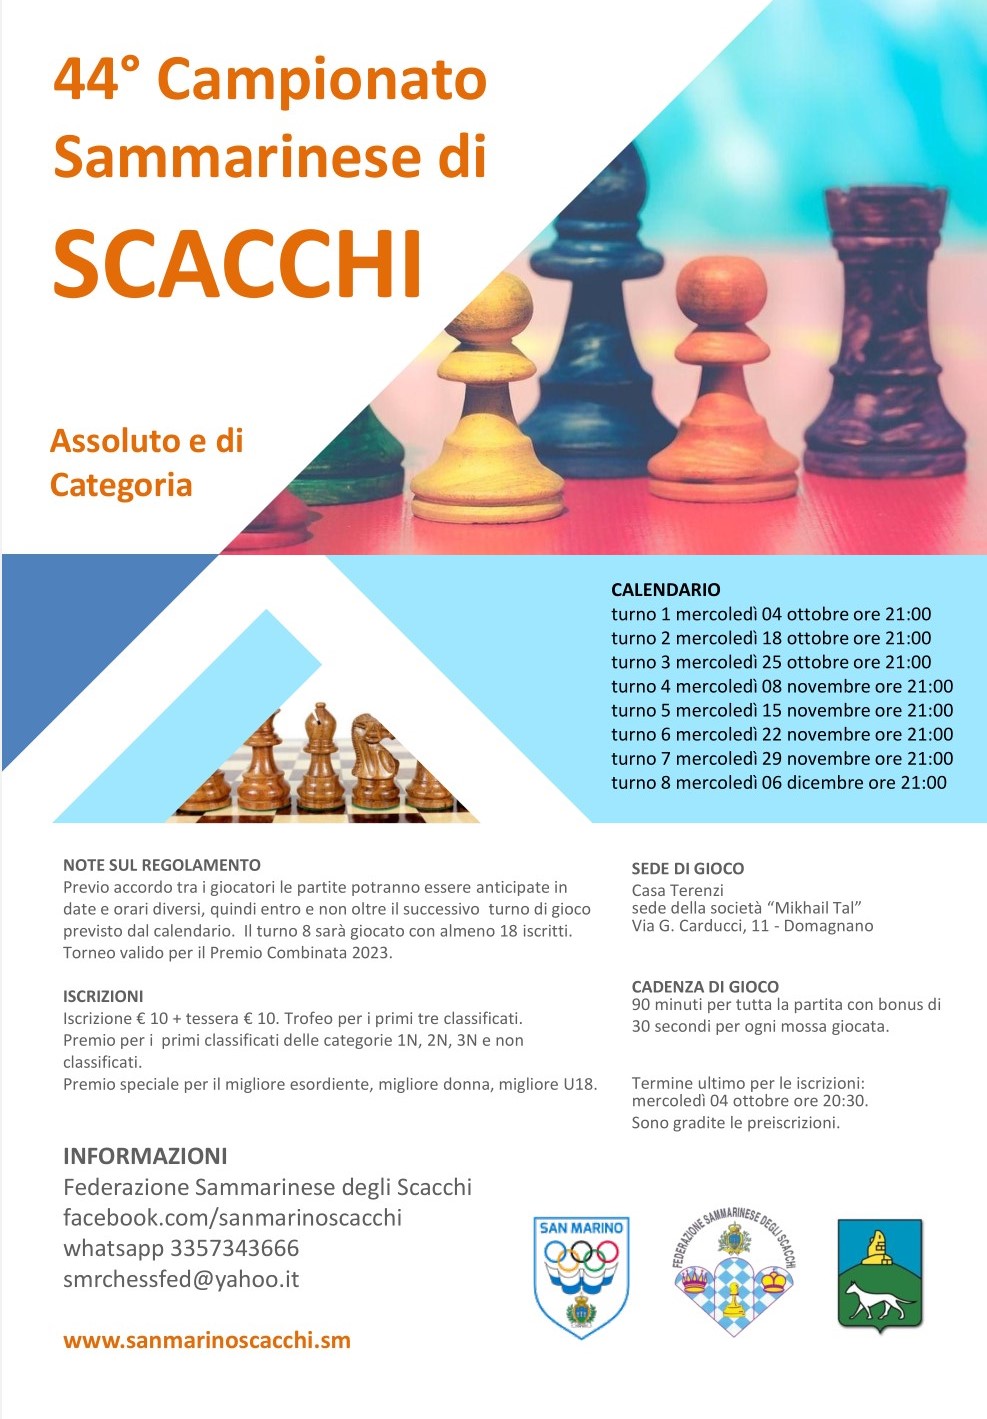 44° Campionato Sammarinese di Scacchi 2023